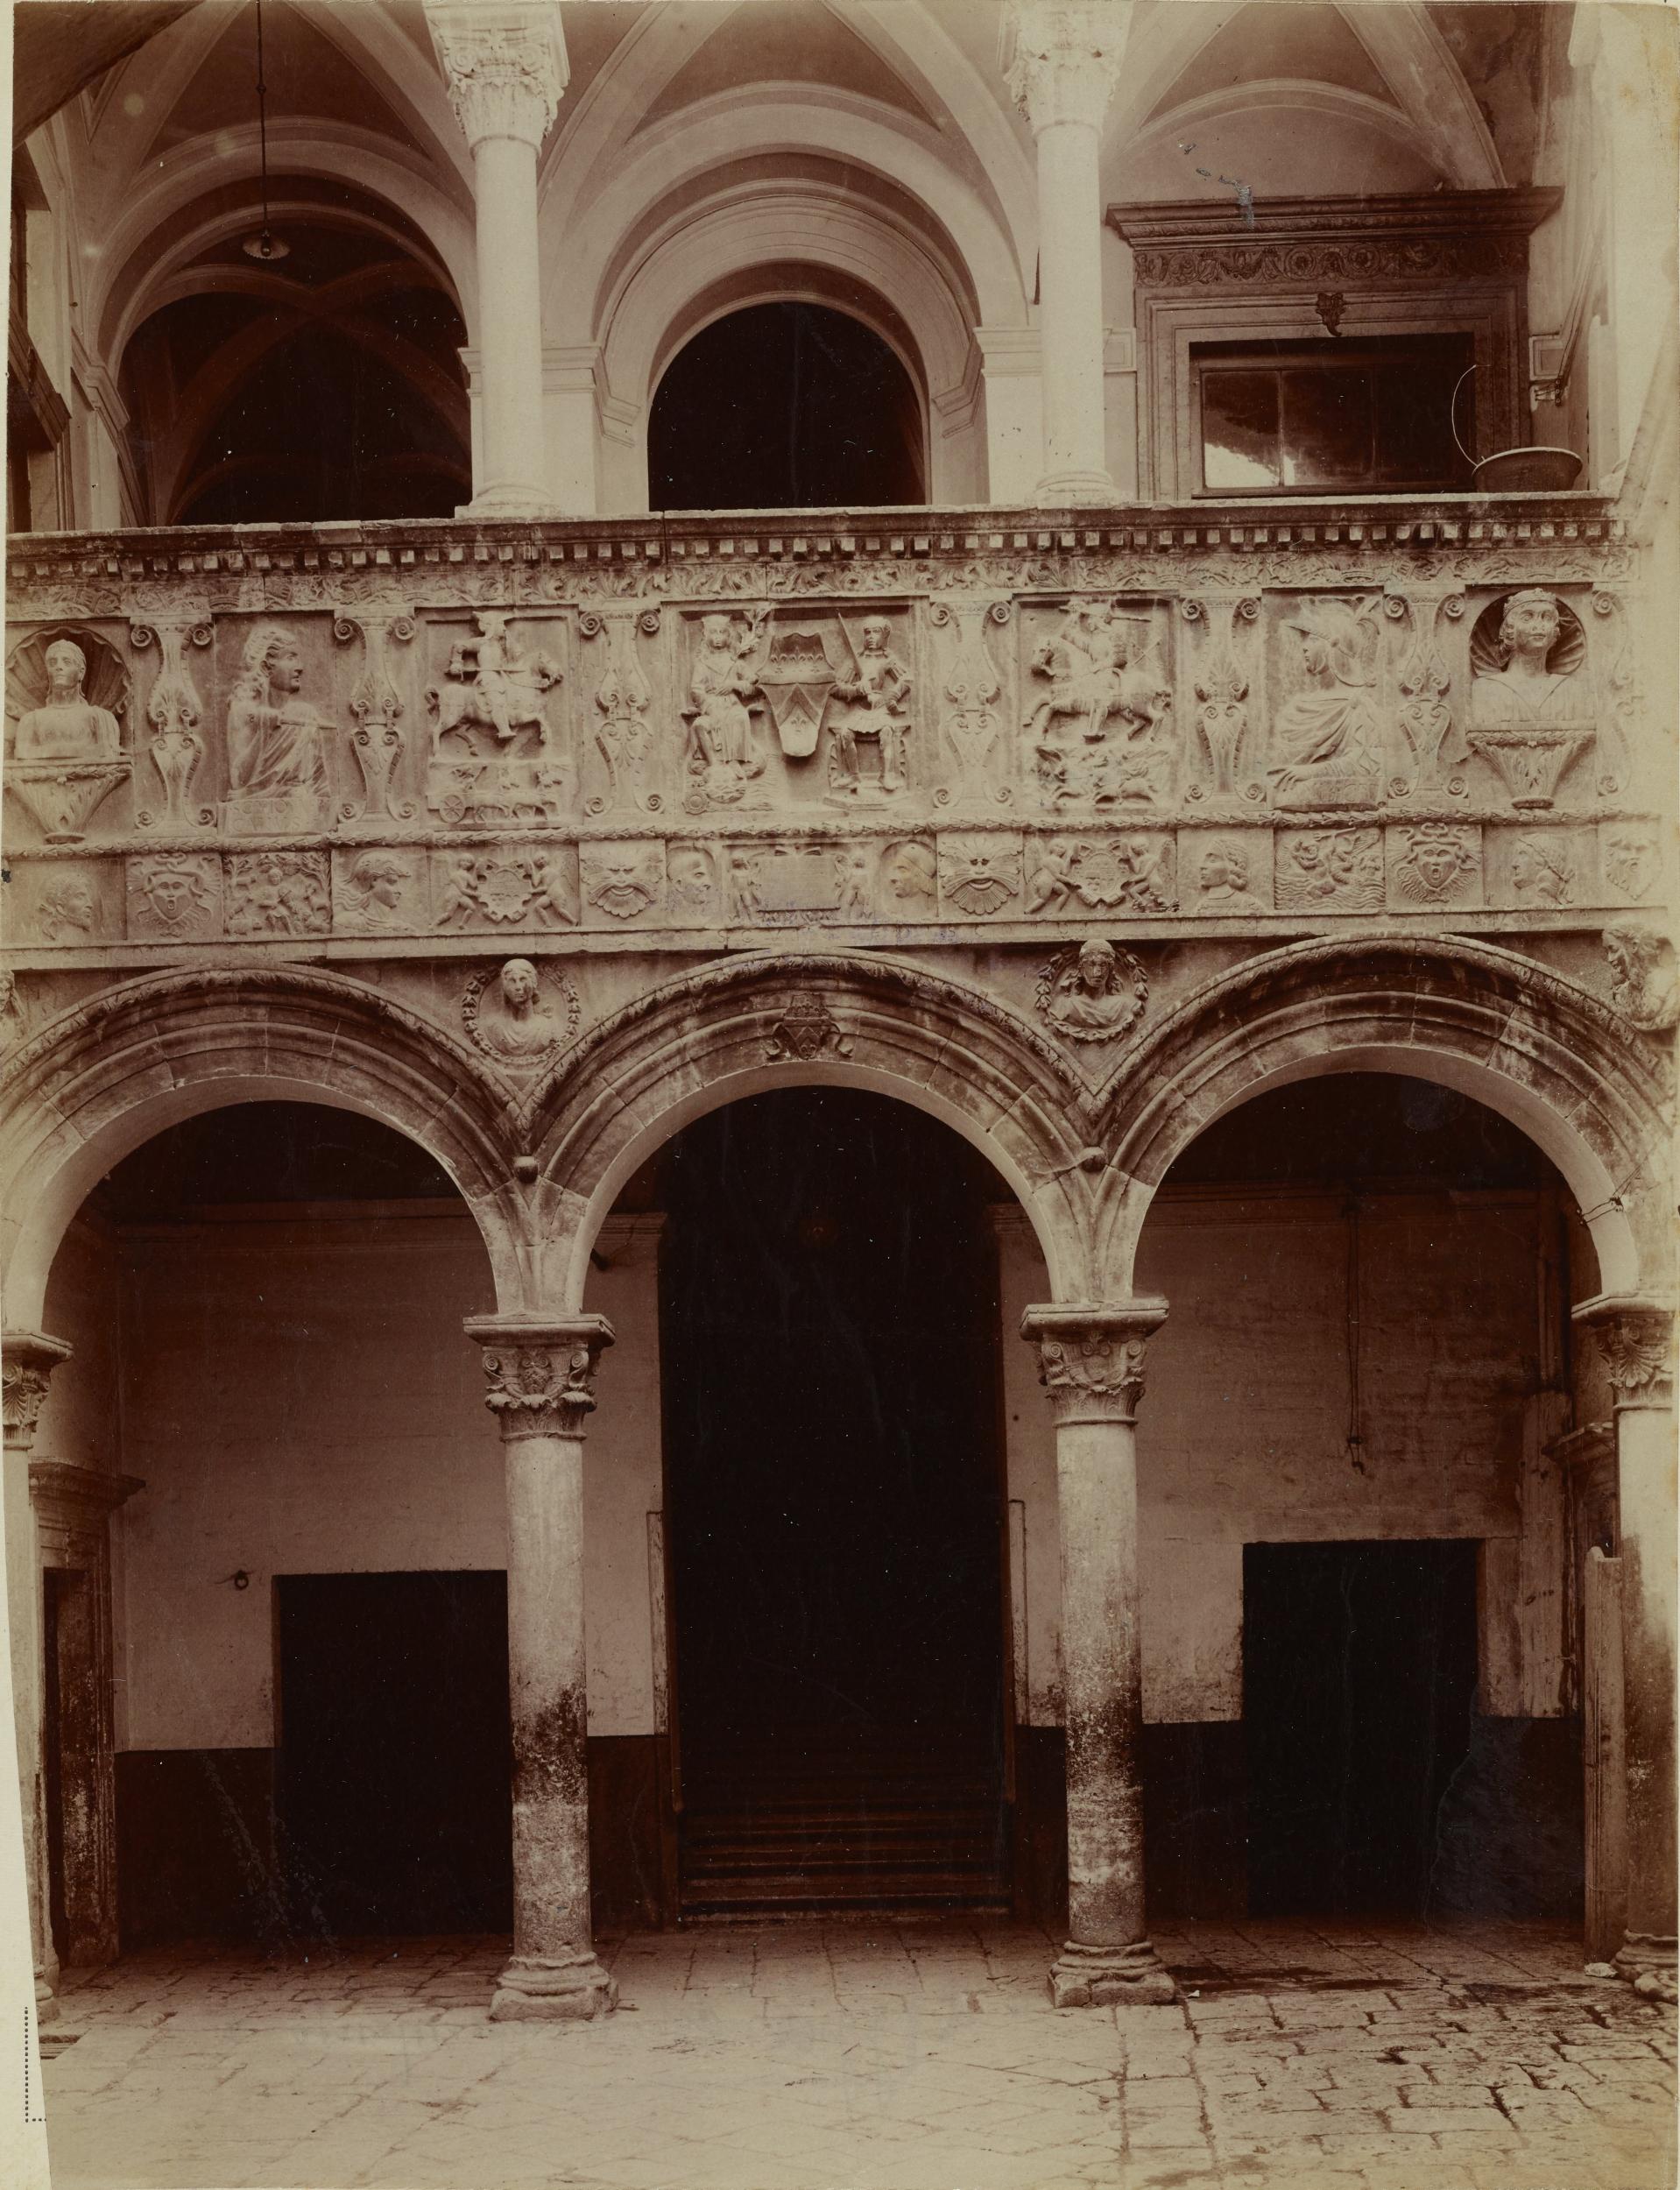 Fotografo non identificato, Bitonto - Palazzo Sylos-Labini, cortile, loggia a colonne con bassorilievi, 1891-1910, albumina/carta, MPI137915